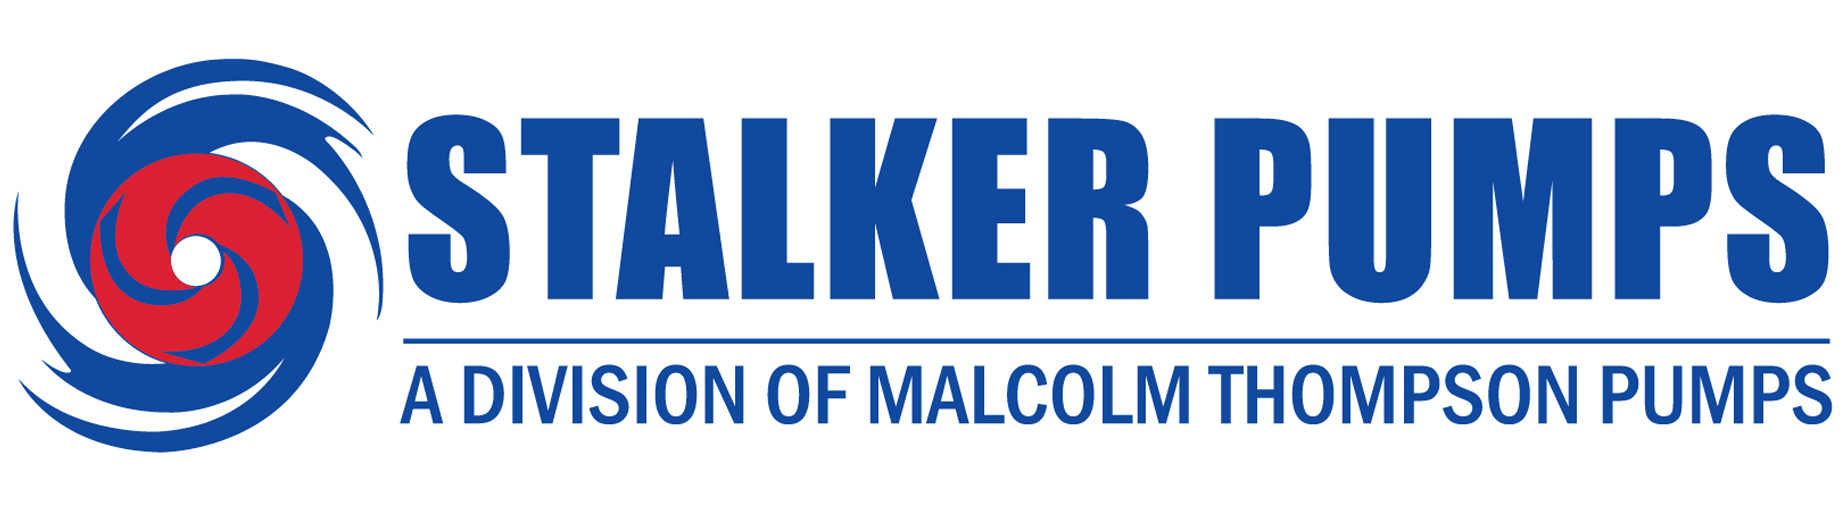 Stalker Pumps logo